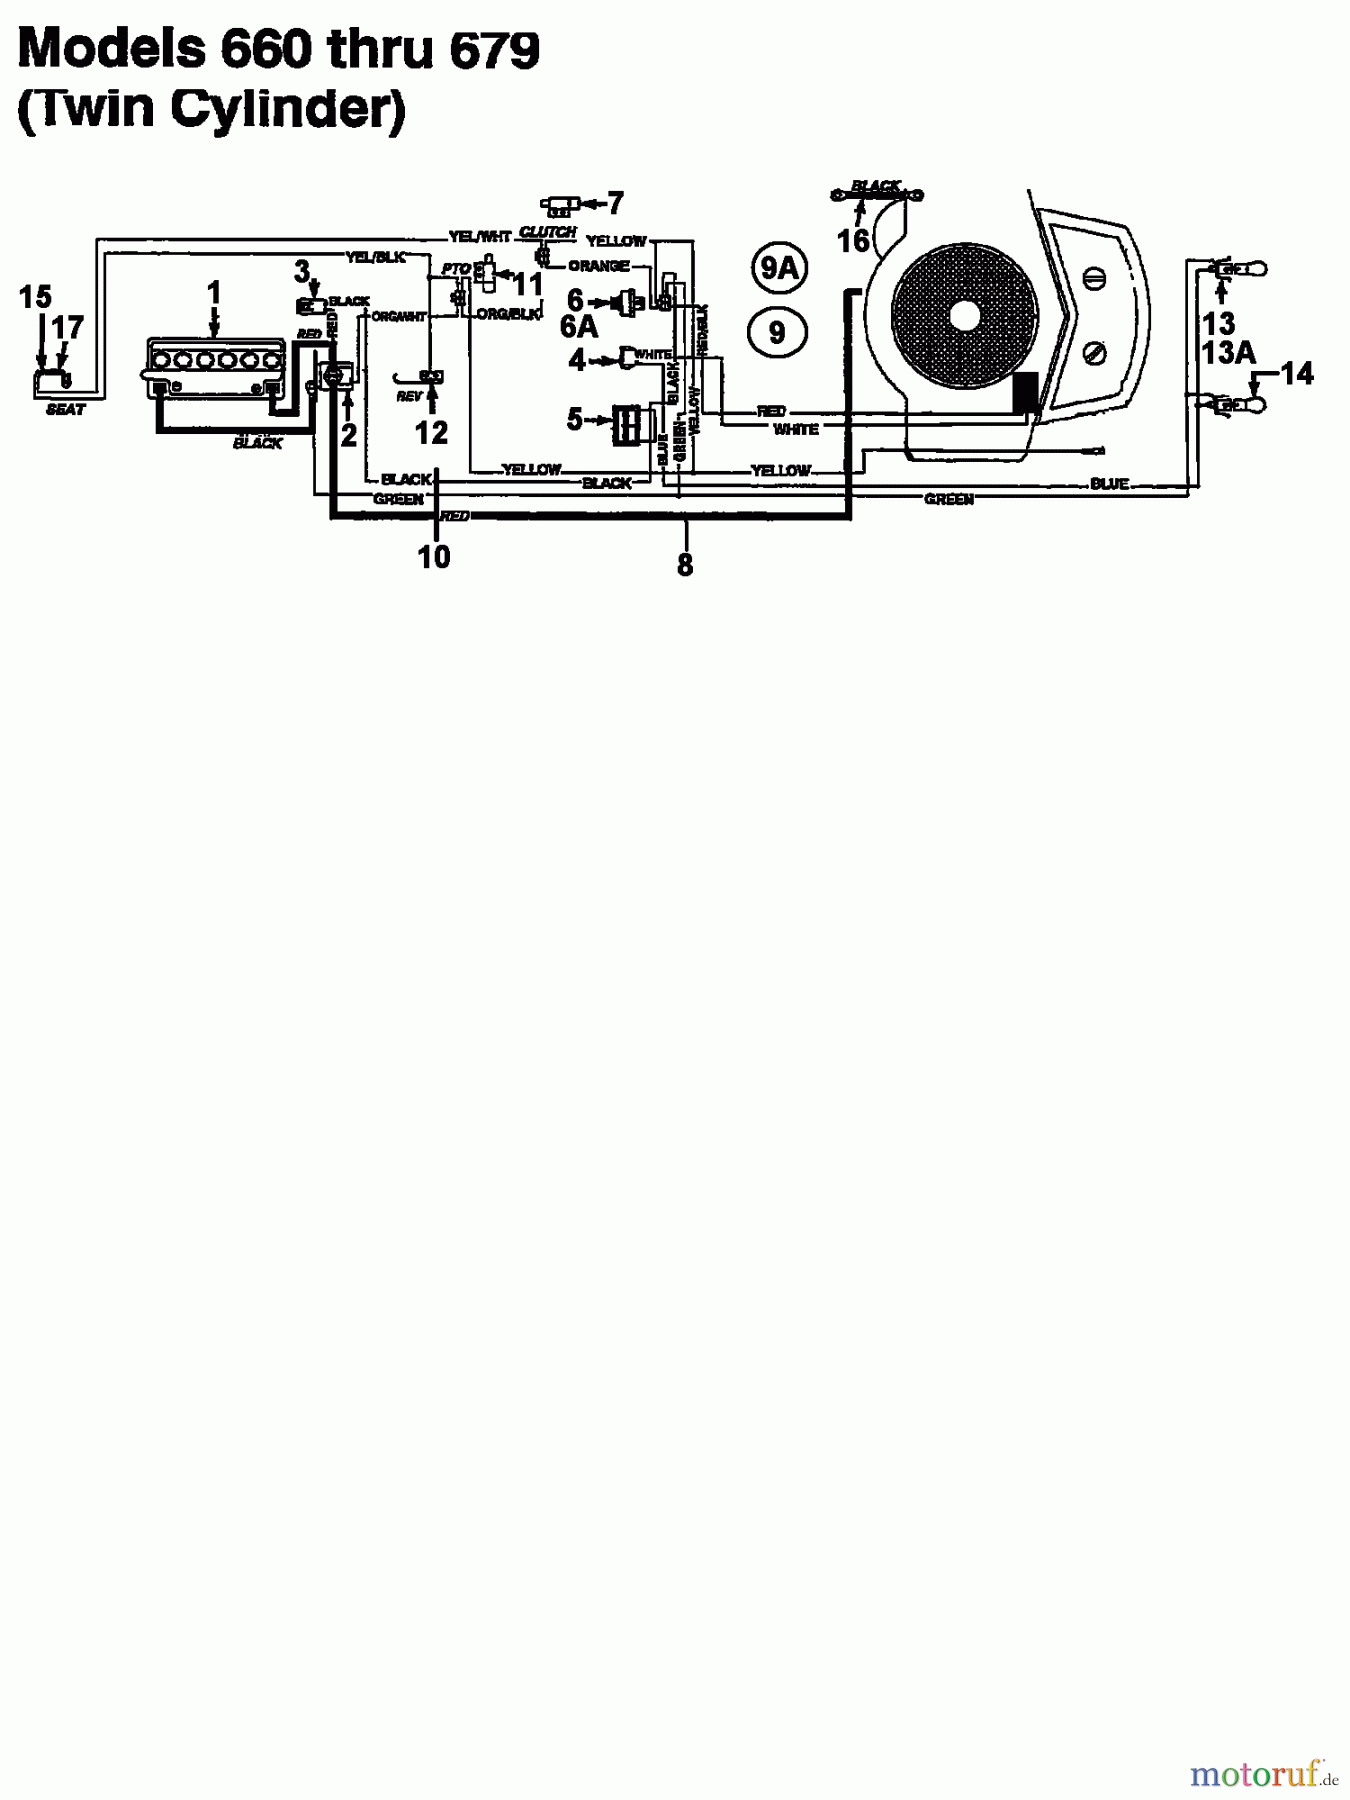  MTD Rasentraktoren 11/30 133C679C600  (1993) Schaltplan 2 Zylinder